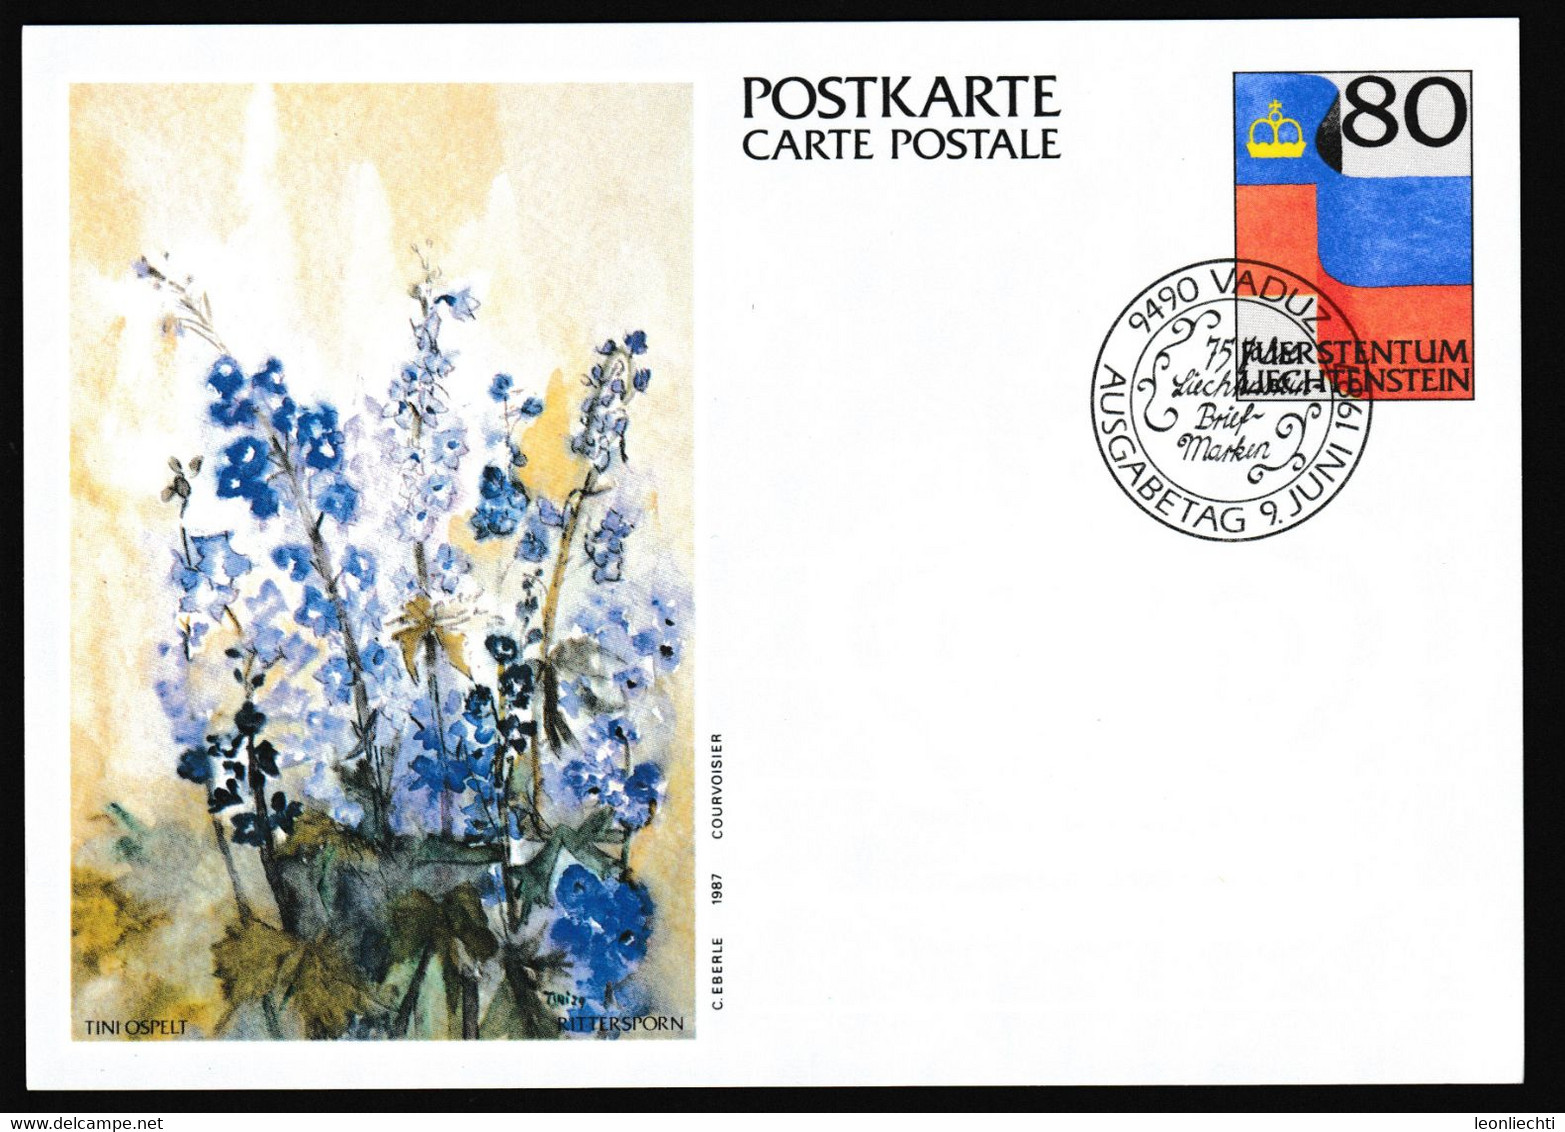 1987 Liechtenstein, Luftpost Carte Postale - Postkarte Ganzsache: Tini Ospelt , Rittersporn - Ganzsachen